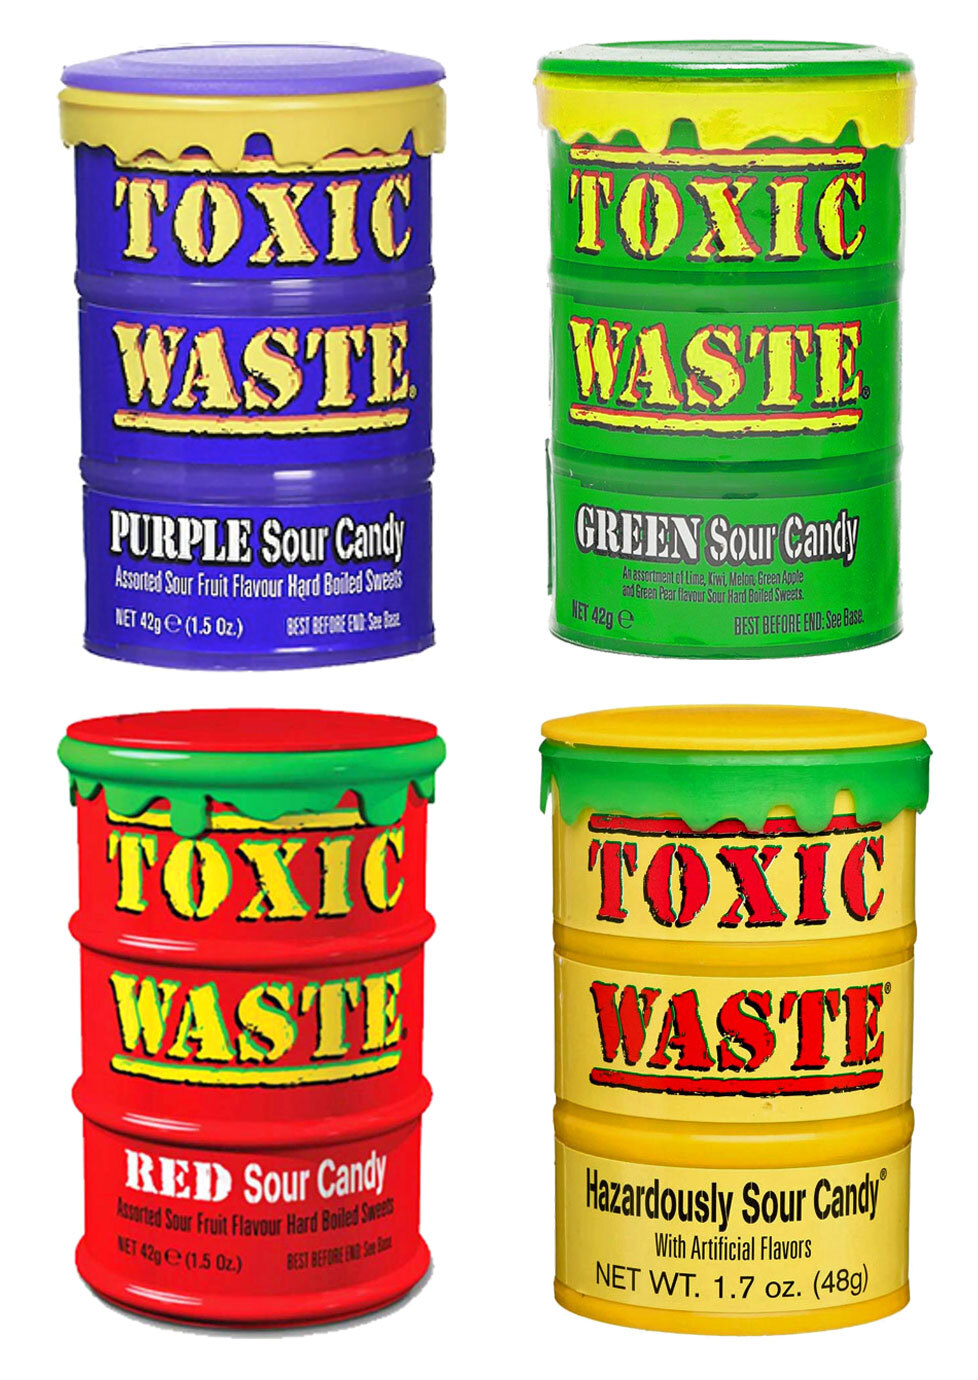 Сколько стоит токсик. Кислые конфеты Toxic waste. Токсичные конфеты Toxic waste. Кислые кислые конфеты Токсик. Токсик Вейст вкусы.